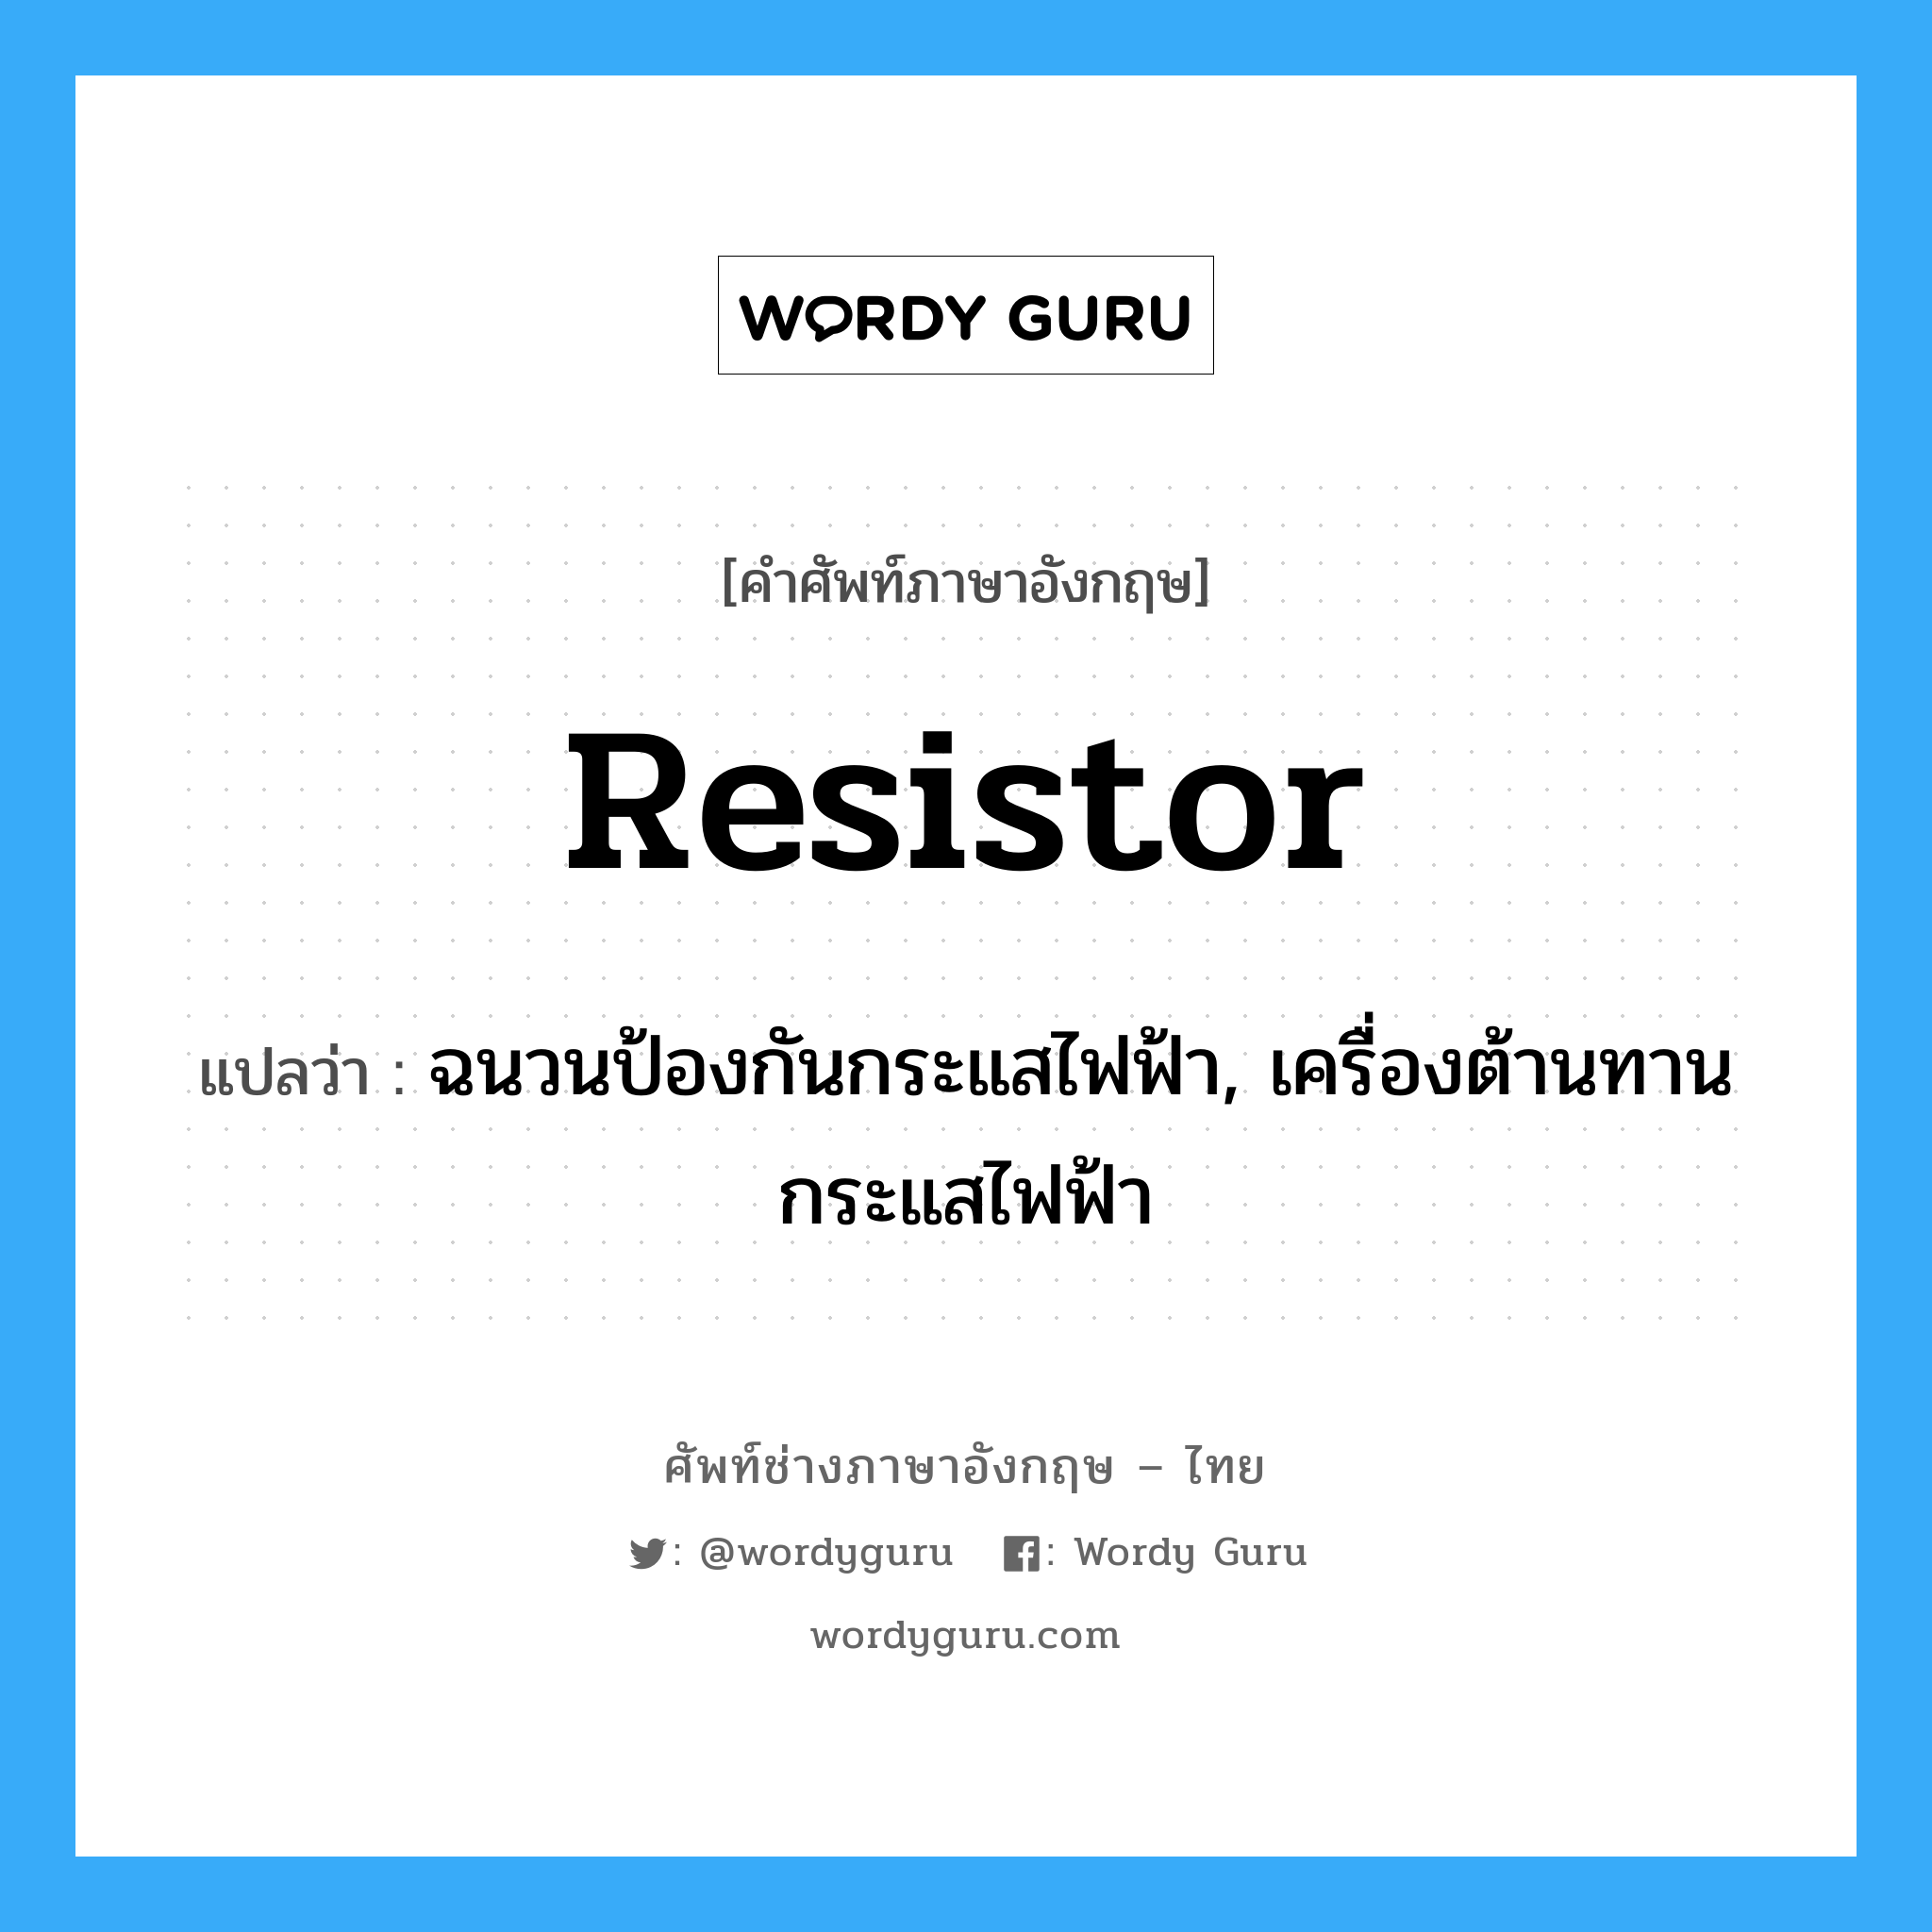 resistor แปลว่า?, คำศัพท์ช่างภาษาอังกฤษ - ไทย resistor คำศัพท์ภาษาอังกฤษ resistor แปลว่า ฉนวนป้องกันกระแสไฟฟ้า, เครื่องต้านทานกระแสไฟฟ้า